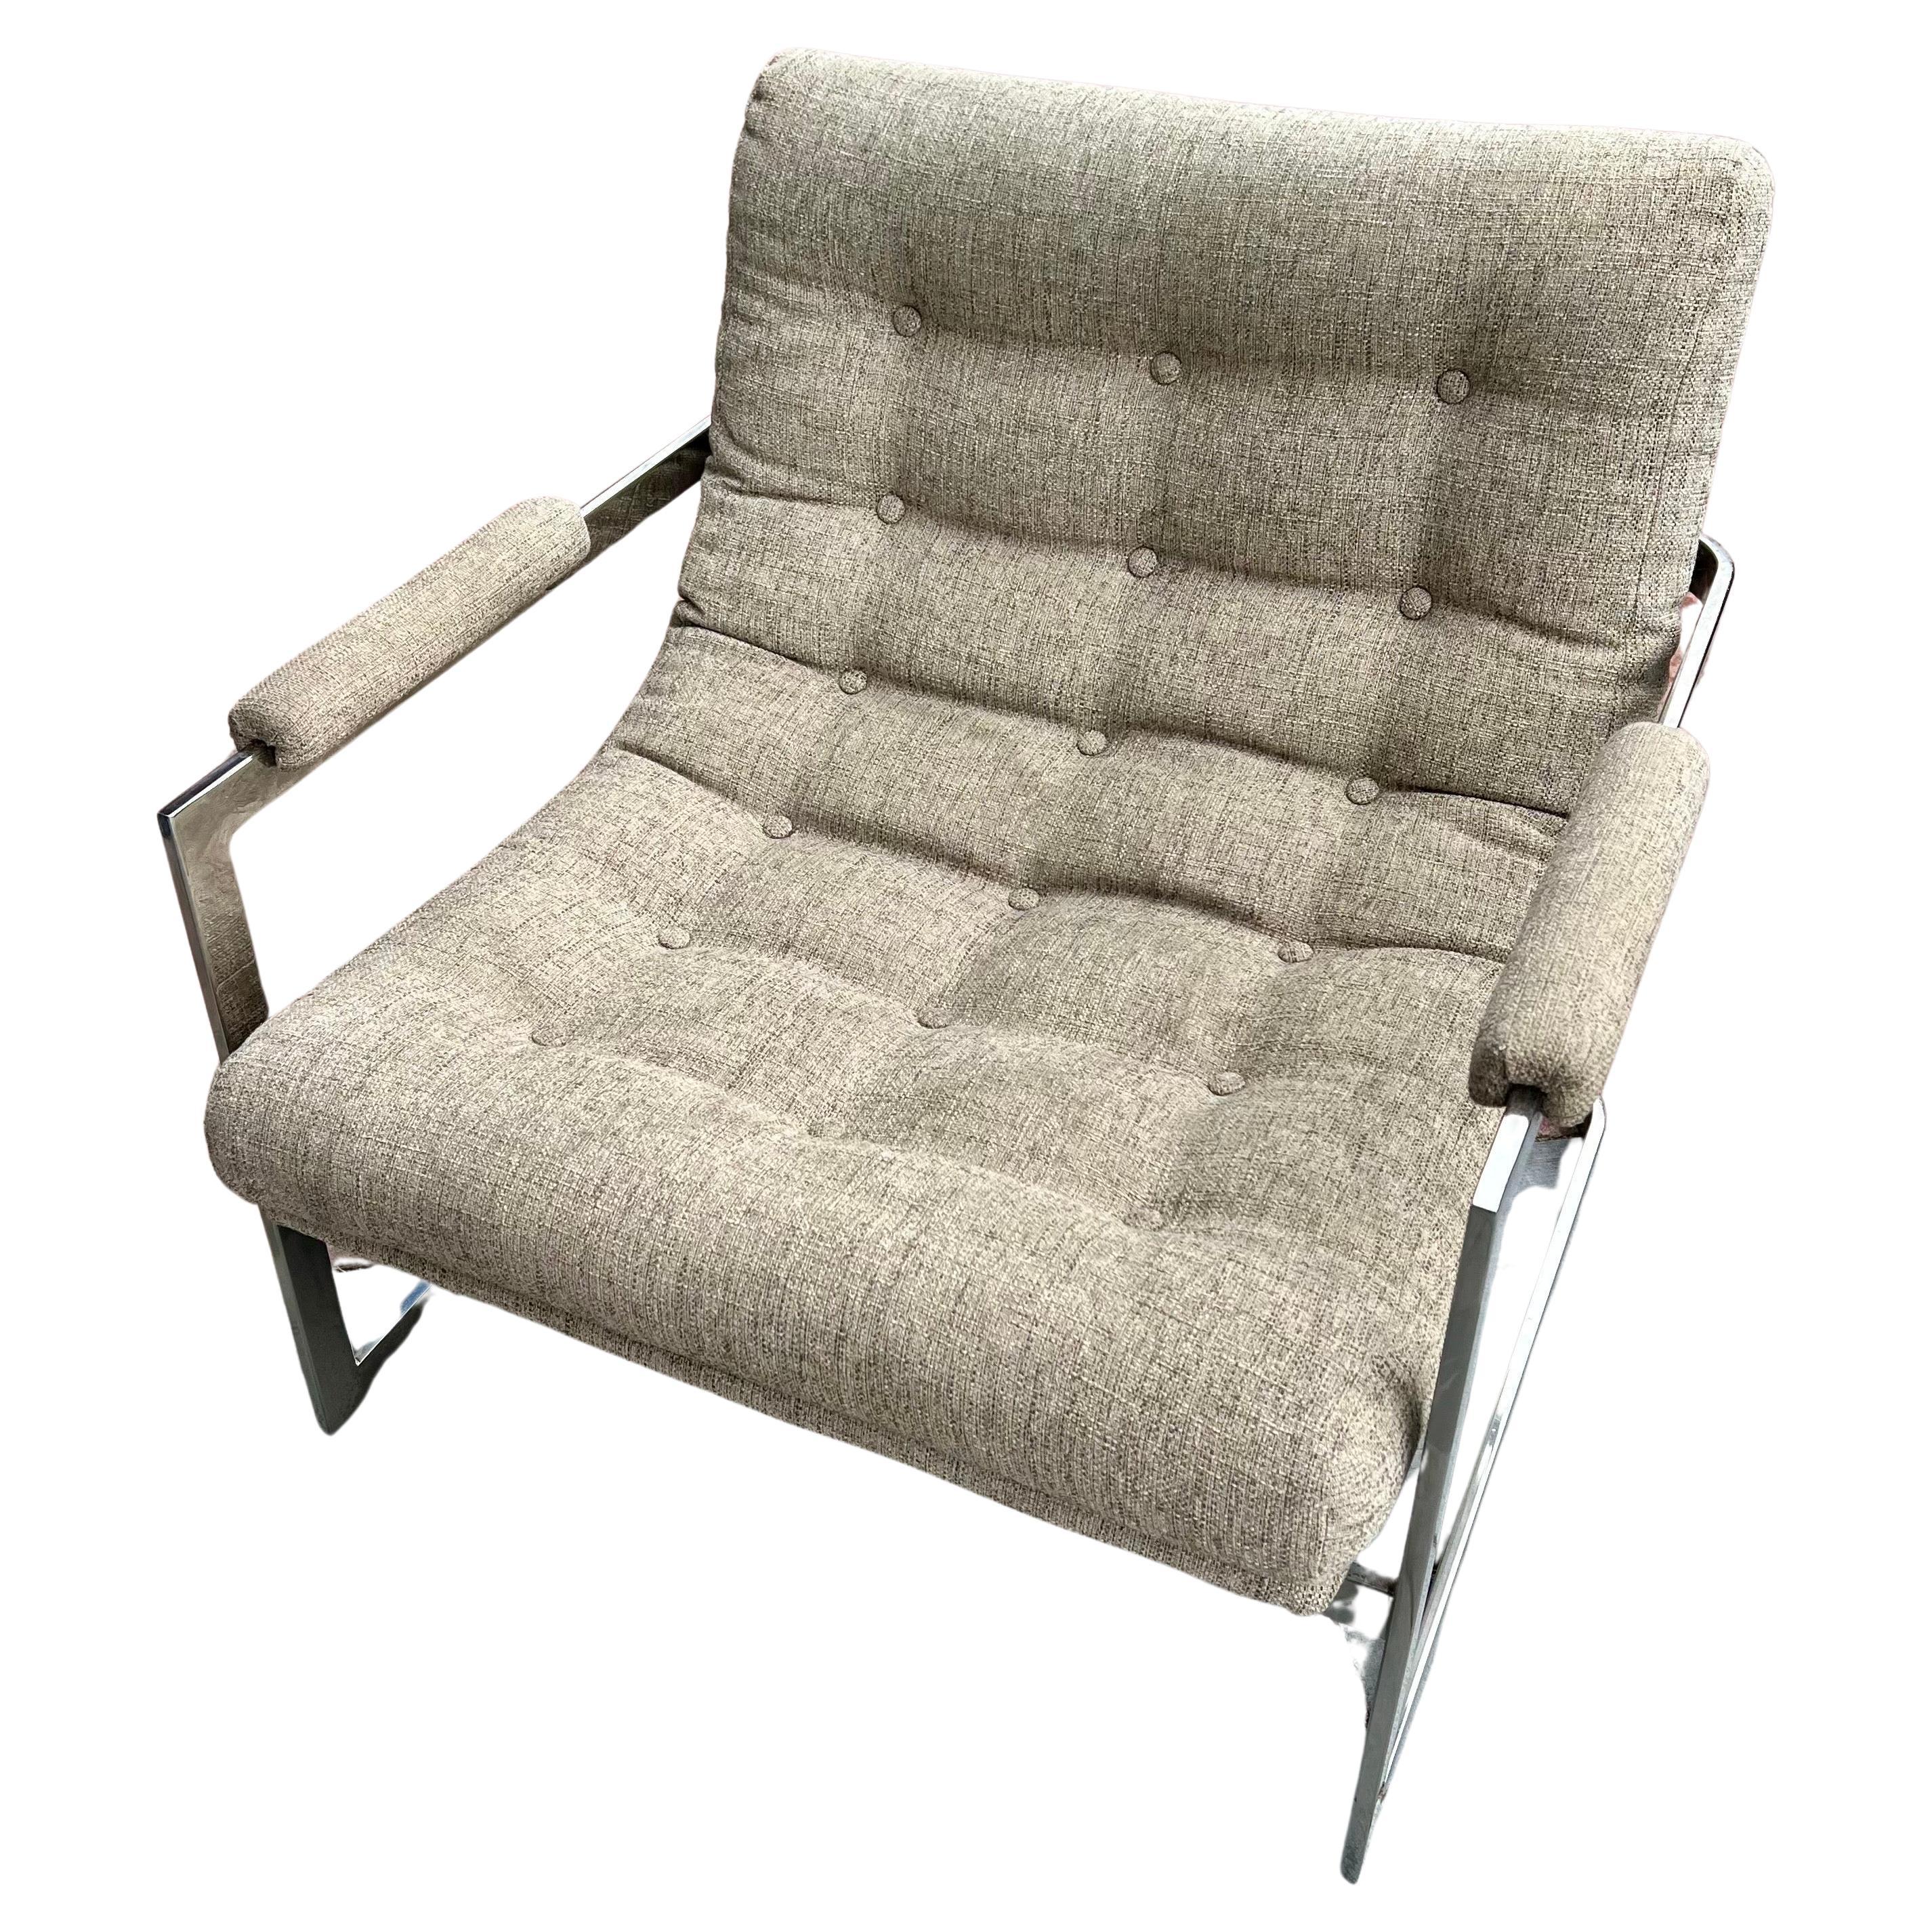 Netter polierter Chromrahmen und gepolsterter Loungesessel, entworfen von Milo Baughman, circa 1970, gepolstert in 2020 zeigt der Stoff einen Wasserfleck, der nichts größeres Knoll-Stoff zeigt, Verkauft als/ist netter und bequemer Stuhl, der